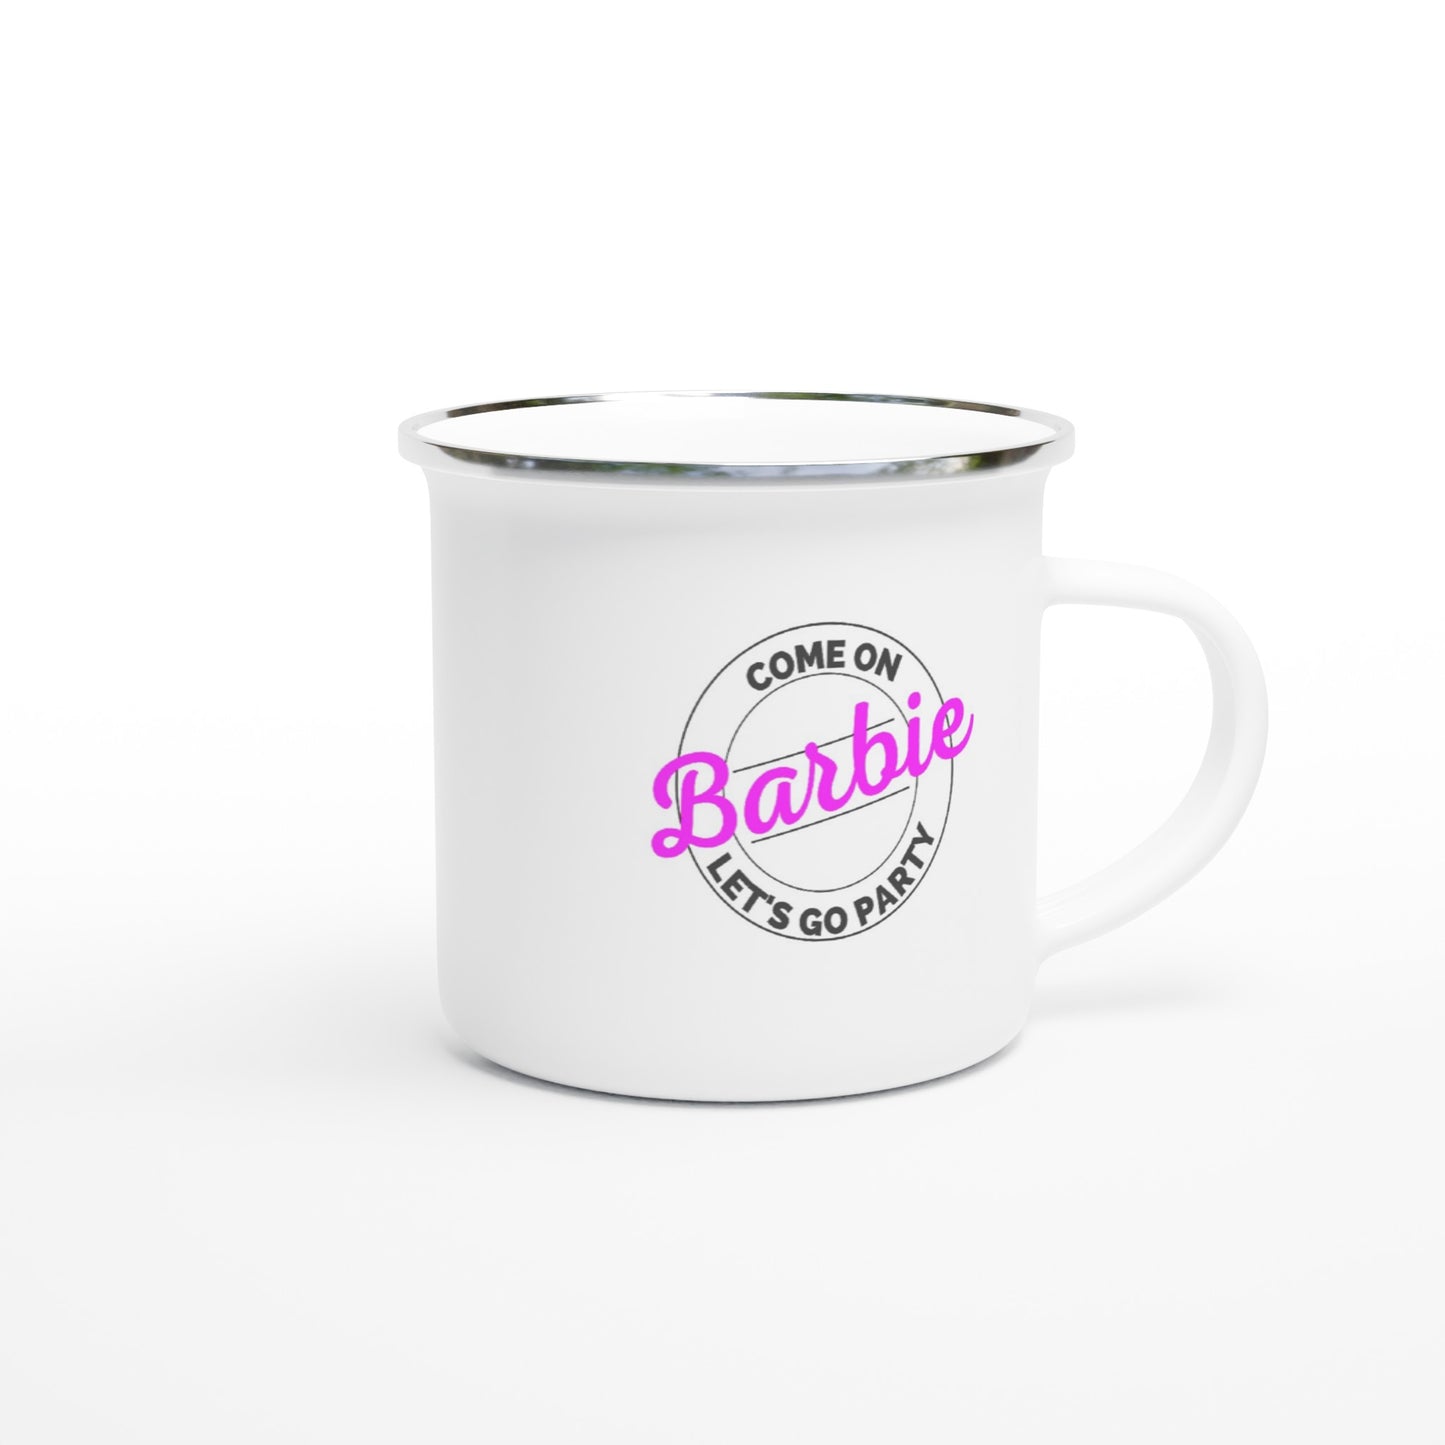 Come on Barbie - White 12oz Enamel Mug